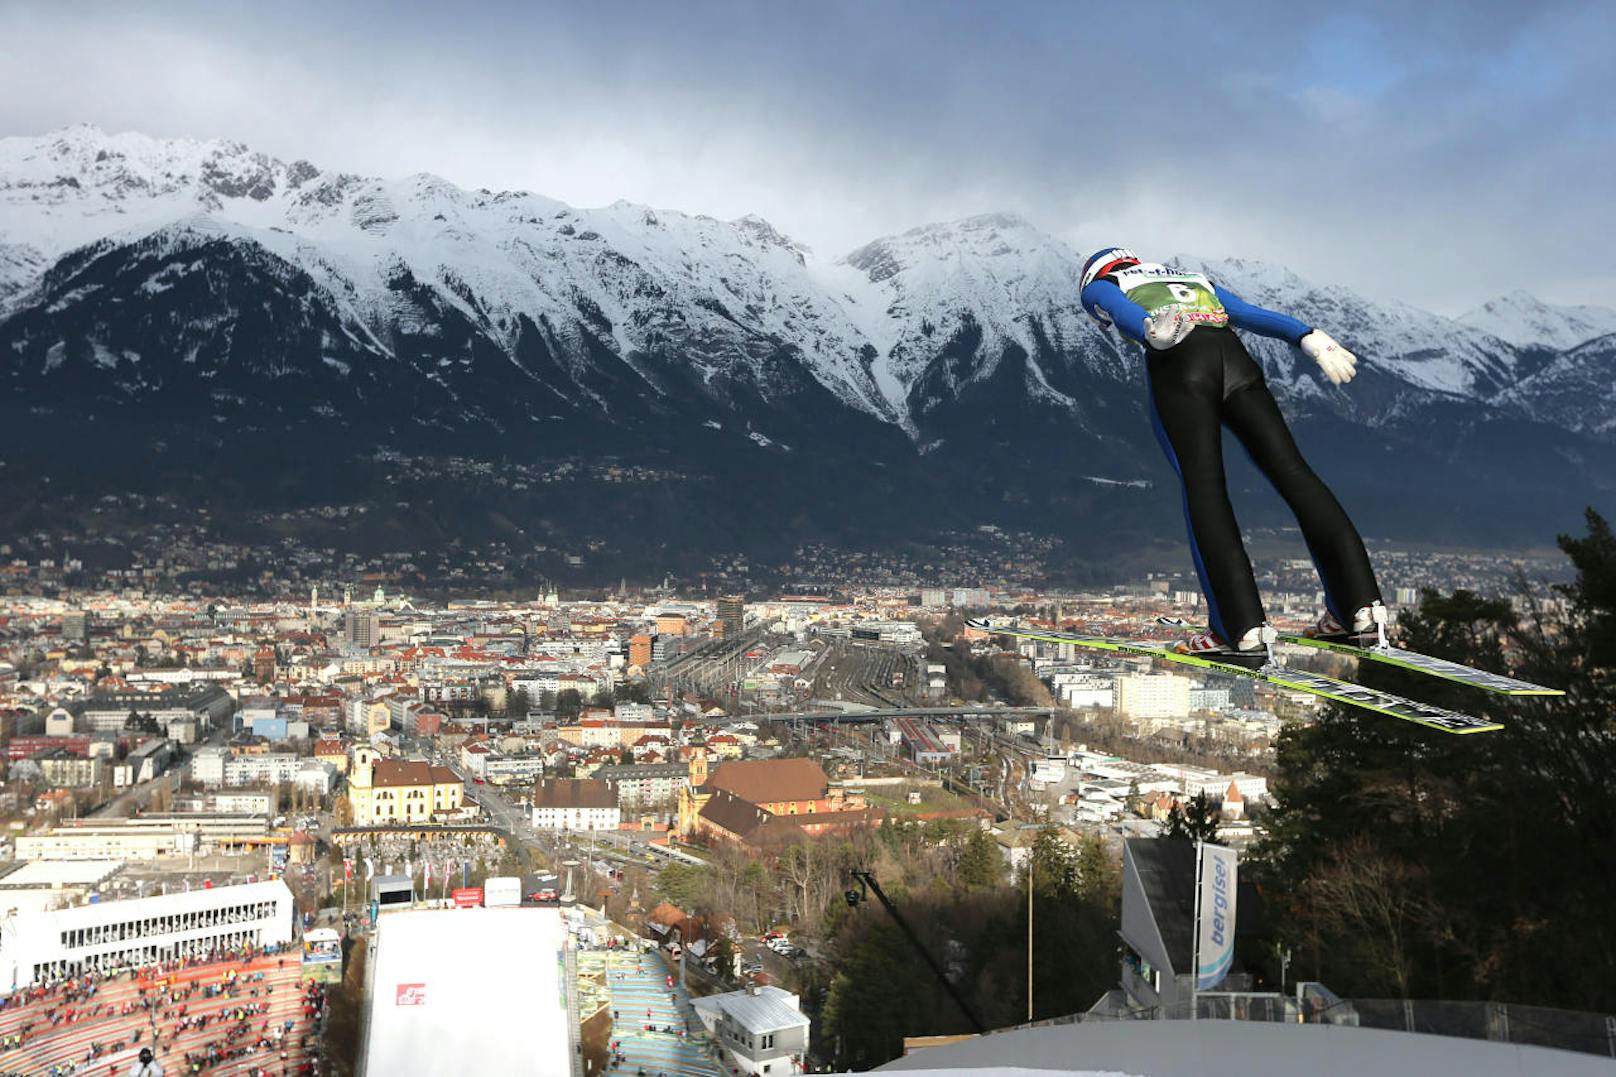 Nach seinem Weltcupdebüt am 6. Jänner 2012 holte Kraft ein Jahr später seine ersten Weltcuppunkte. Beim Heimspringen der Vierschanzentournee in Innsbruck segelte er im Jänner 2013 auf Platz 23.